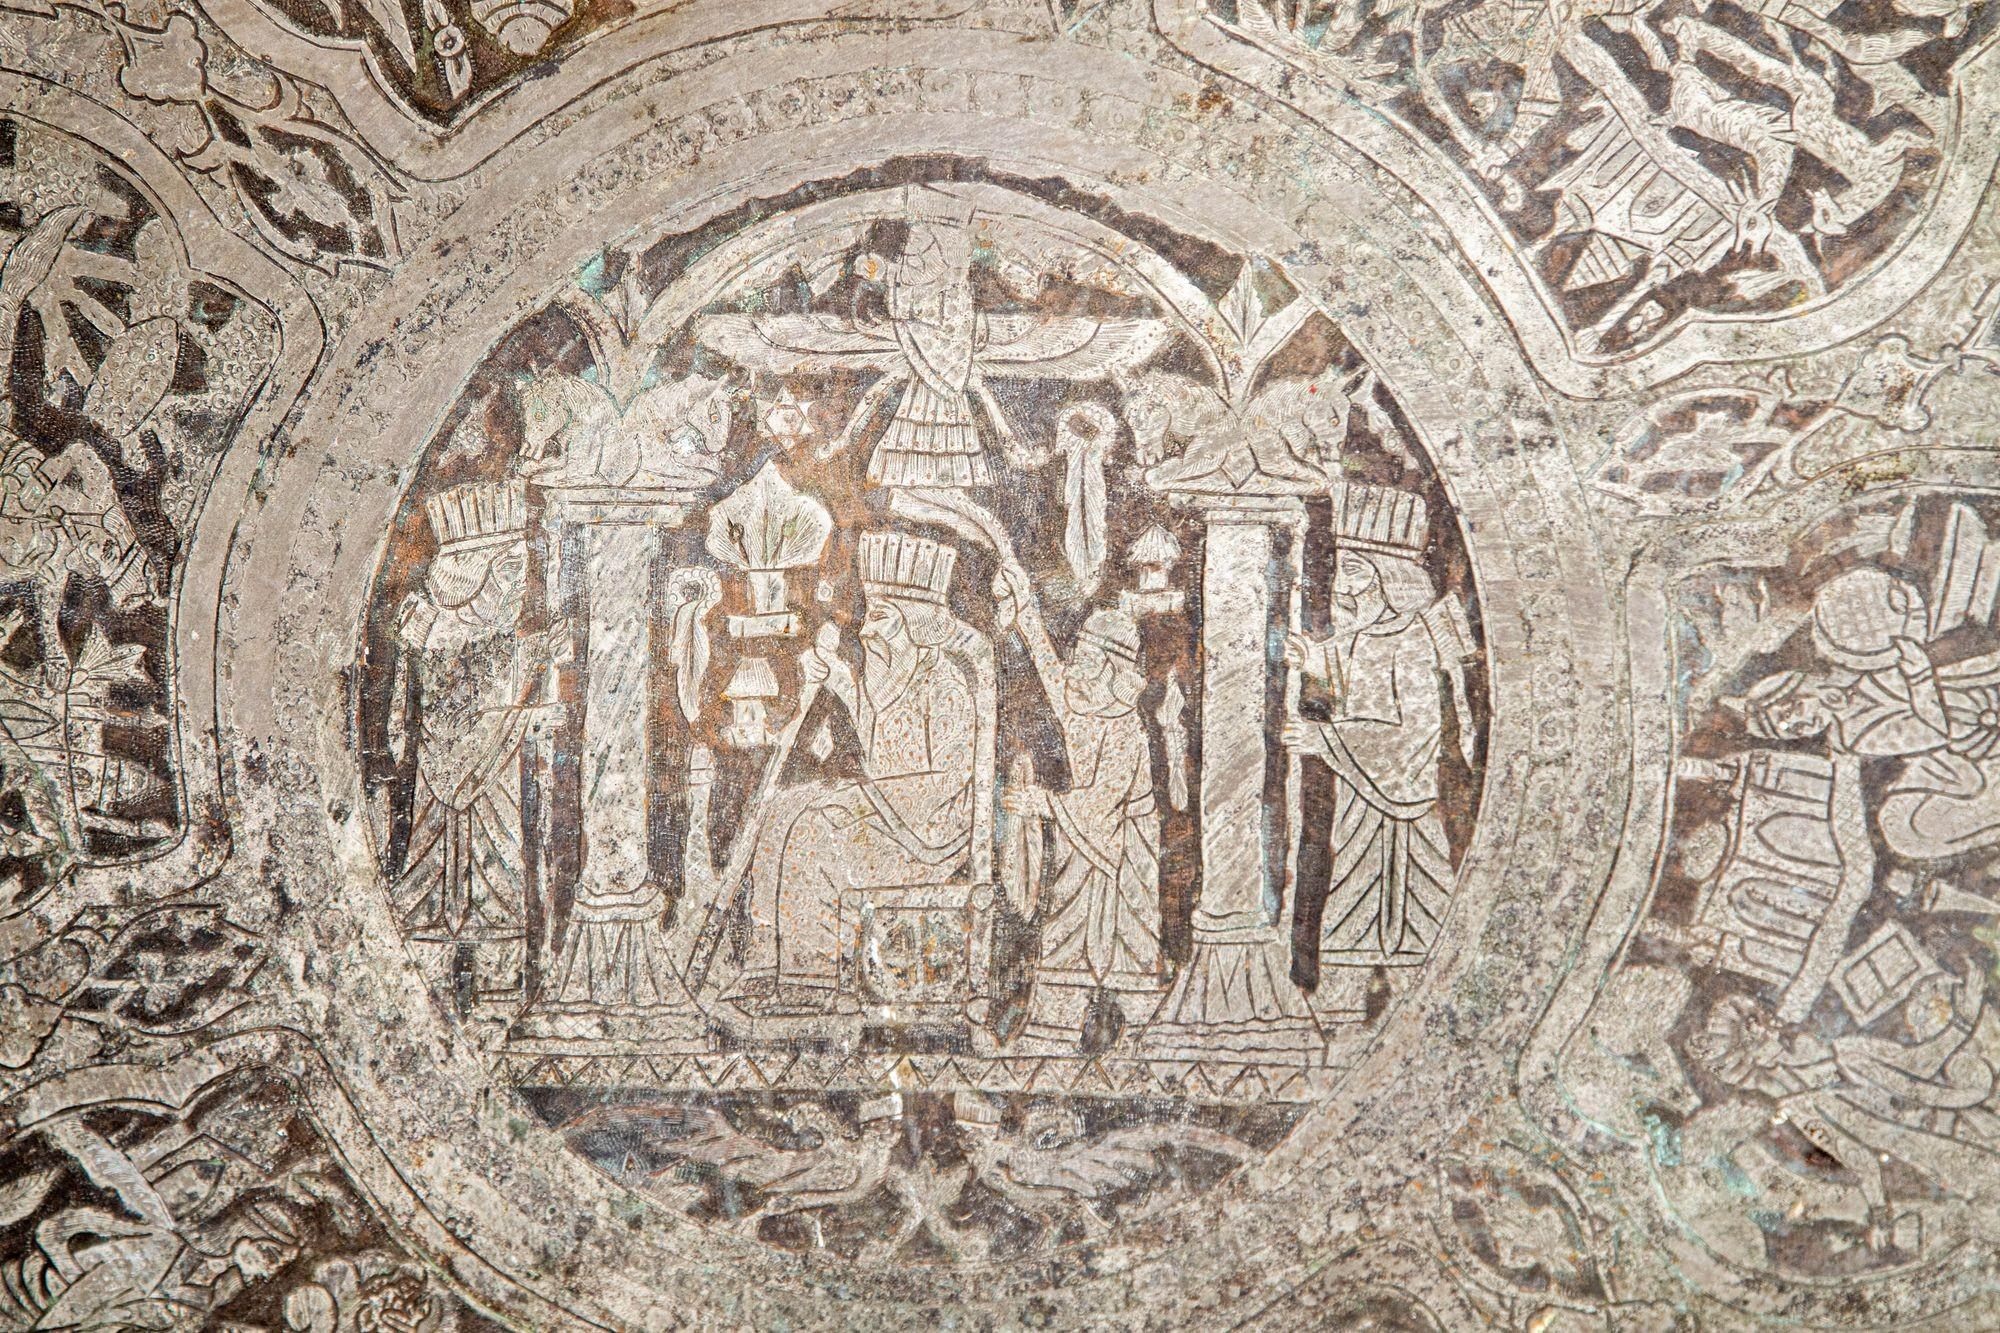 Großes graviertes antikes persisches Wandtablett aus dem Mittleren Osten, Teller.
Ein großes dekoratives Mittelstück aus Metall oder ein Wandbehang. Wunderschöne handgefertigte Handwerkskunst.
Ein feines, großes, schweres, rundes Tablett aus